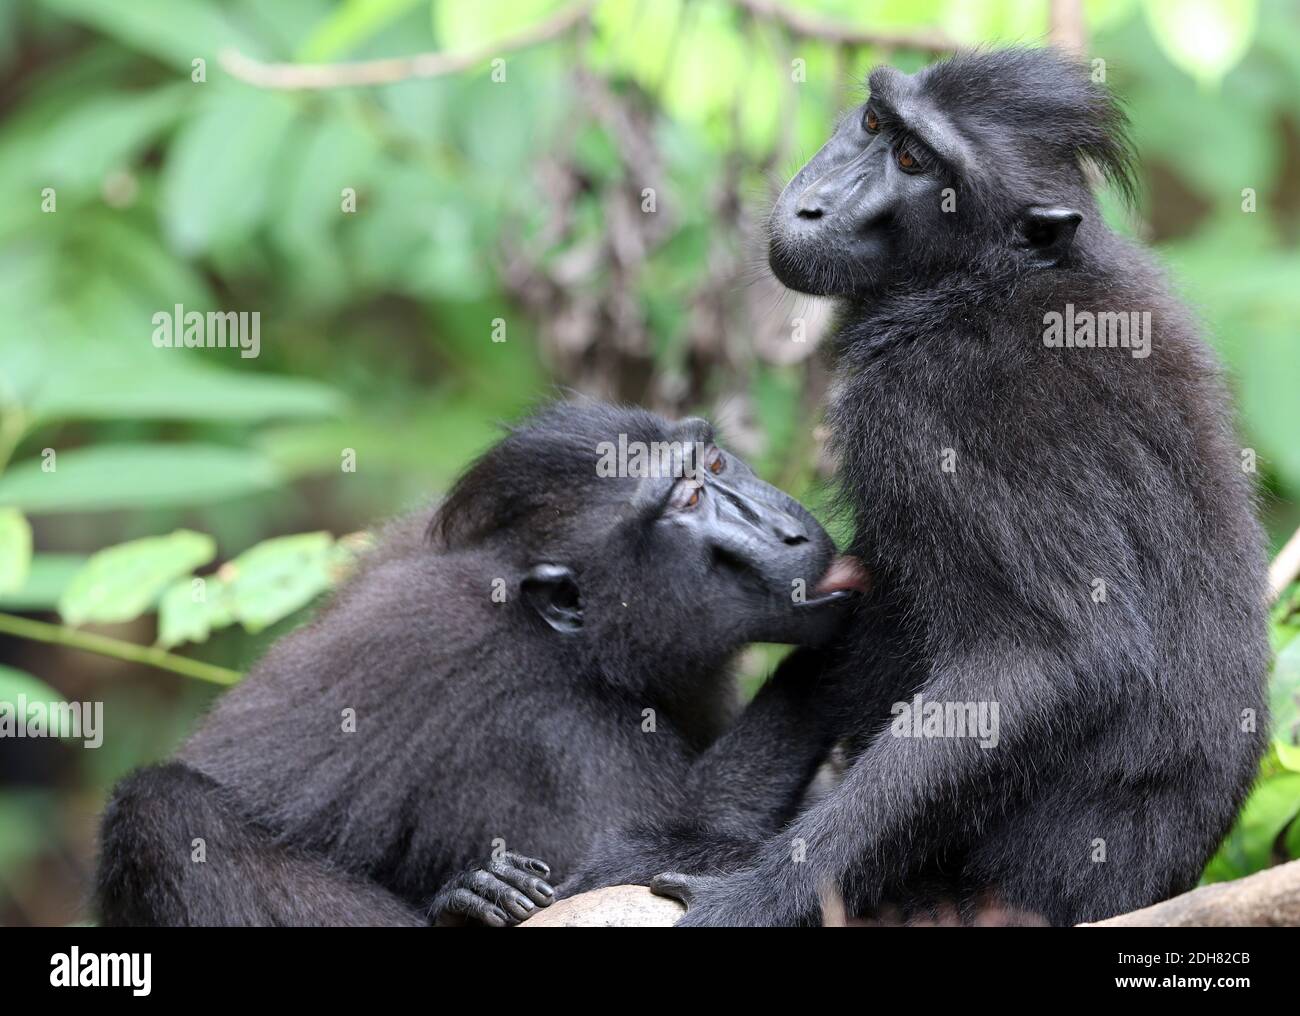 Singe de Celebes, singe noir de Celebes, macaque à crête de Sulawesi, macaque à crête de Celebes (Macaca nigra, Cynopithecus niger), deux singes de toilettage l'un l'autre Banque D'Images